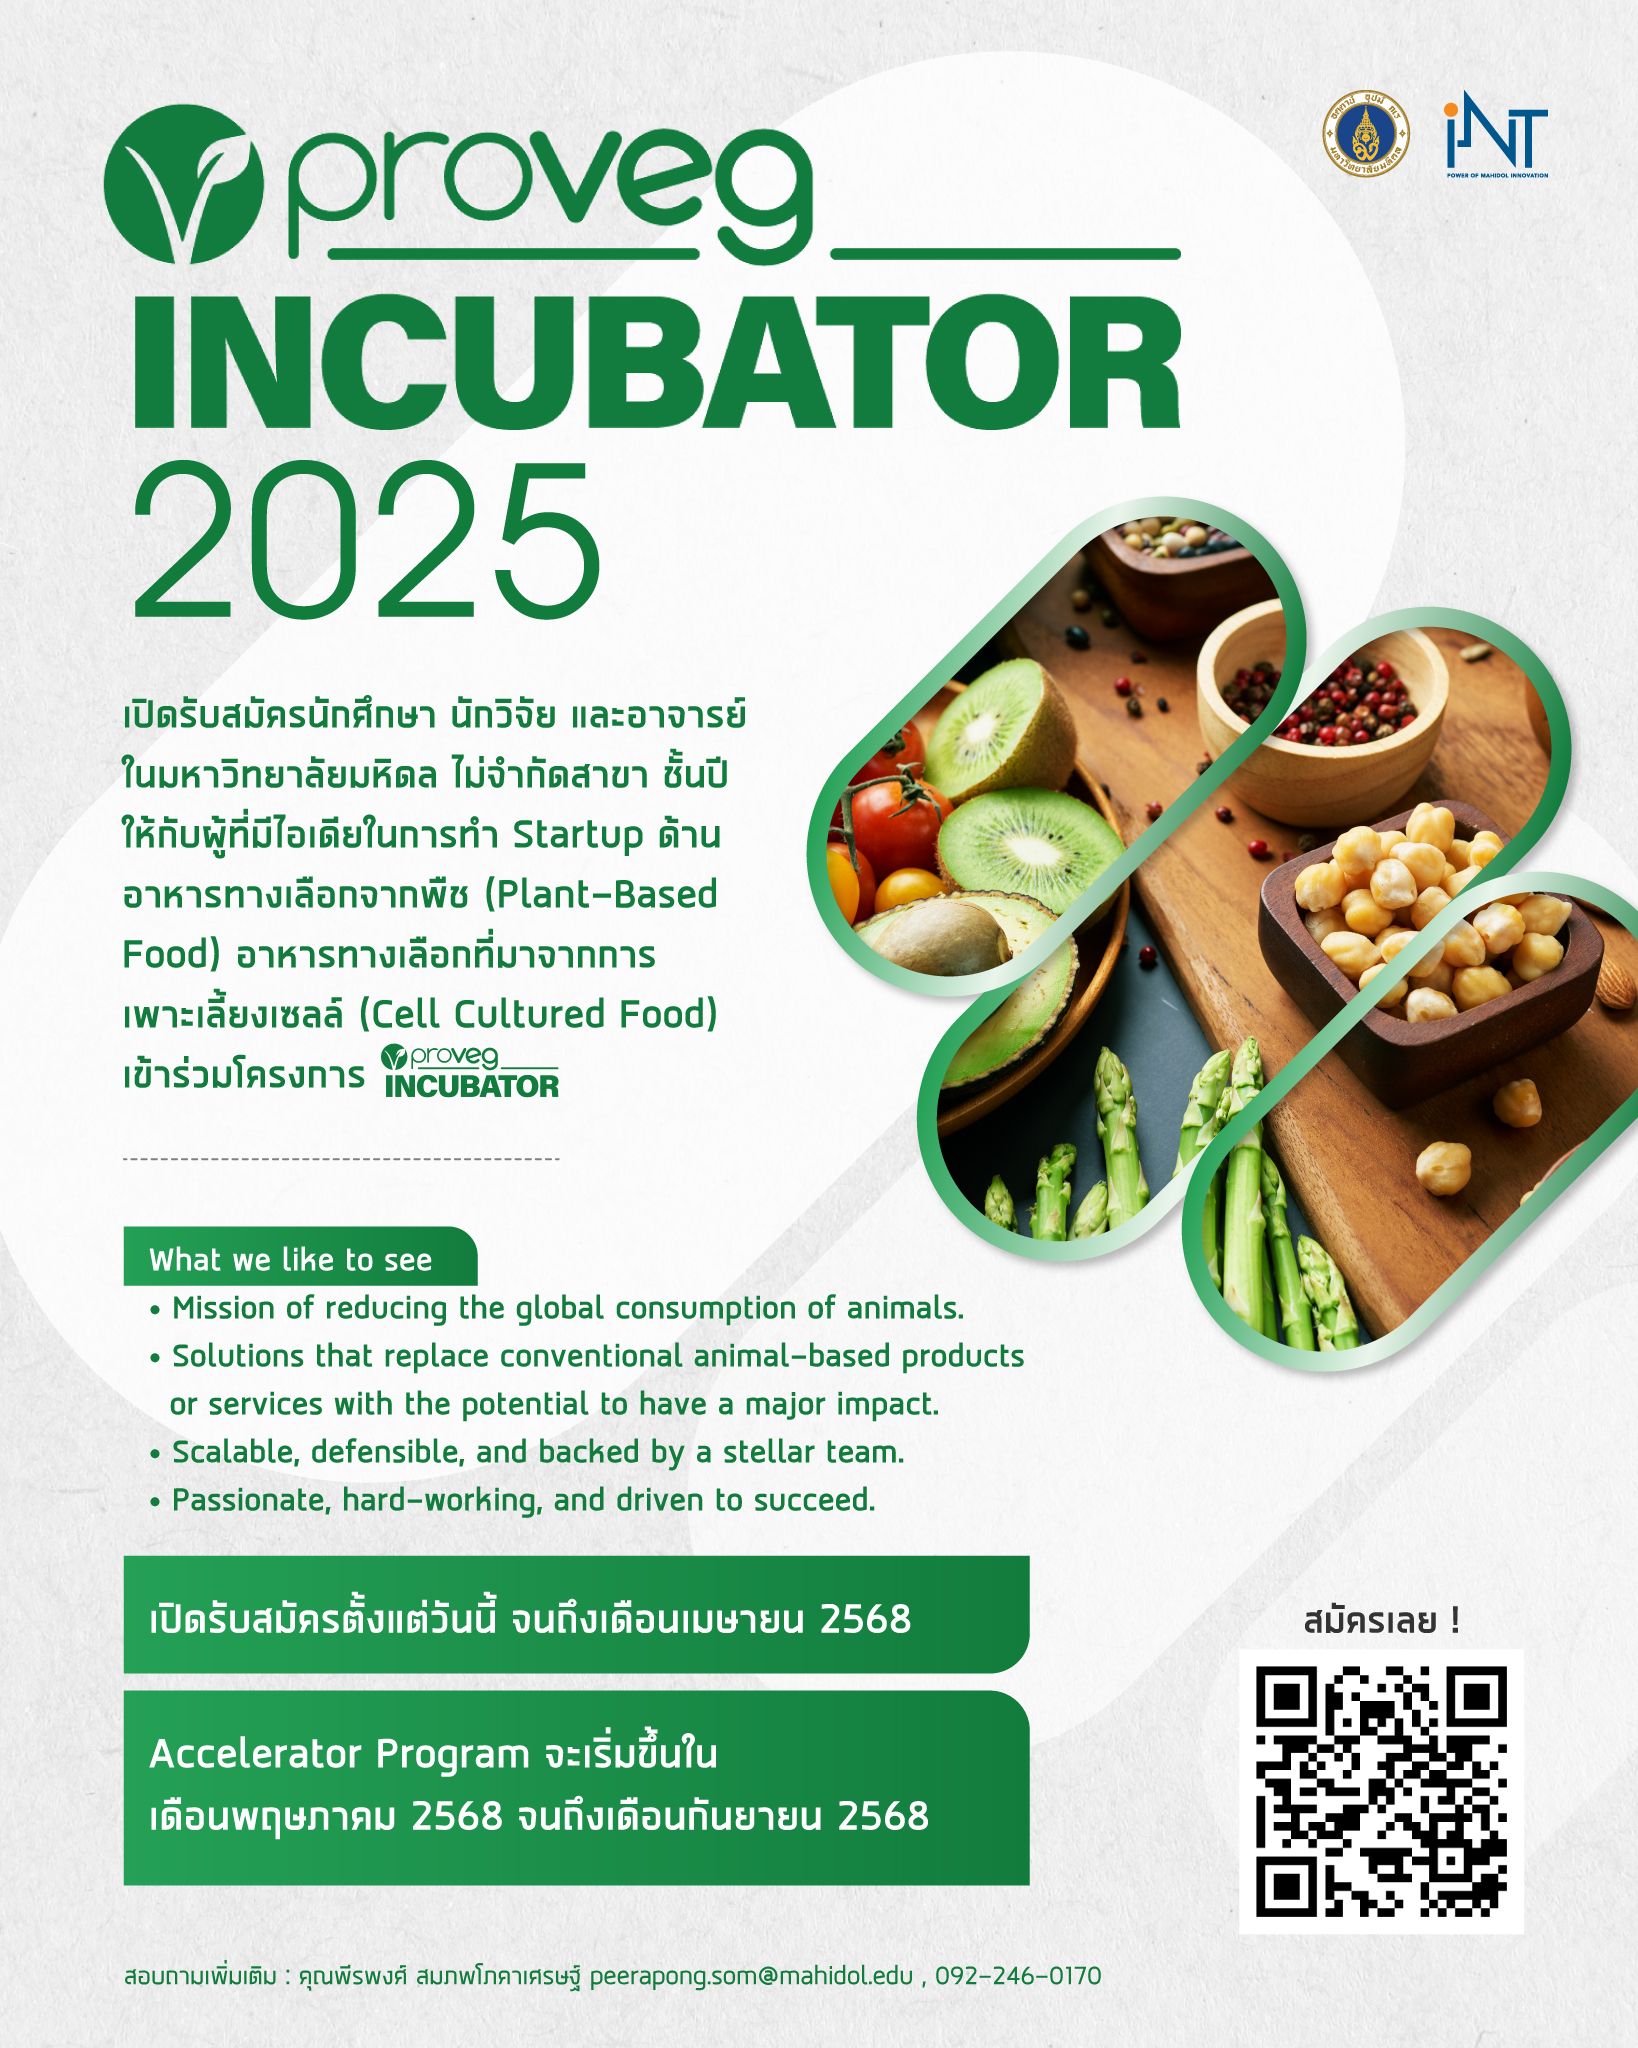 สถาบันบริหารจัดการเทคโนโลยีและนวัตกรรม (iNT) ขอเชิญชวนนักศึกษา อาจารย์ นักวิจัยของม.มหิดล ที่มีไอเดียในการทำ Startup ทางด้าน Plant-Based Food หรือ Cell Cultured Food เข้าร่วมโครงการ 'ProVeg Incubator 2025'